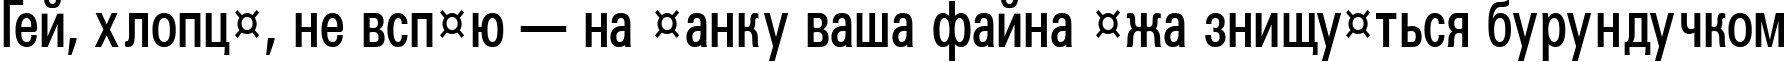 Пример написания шрифтом a_GroticCnDemi текста на украинском